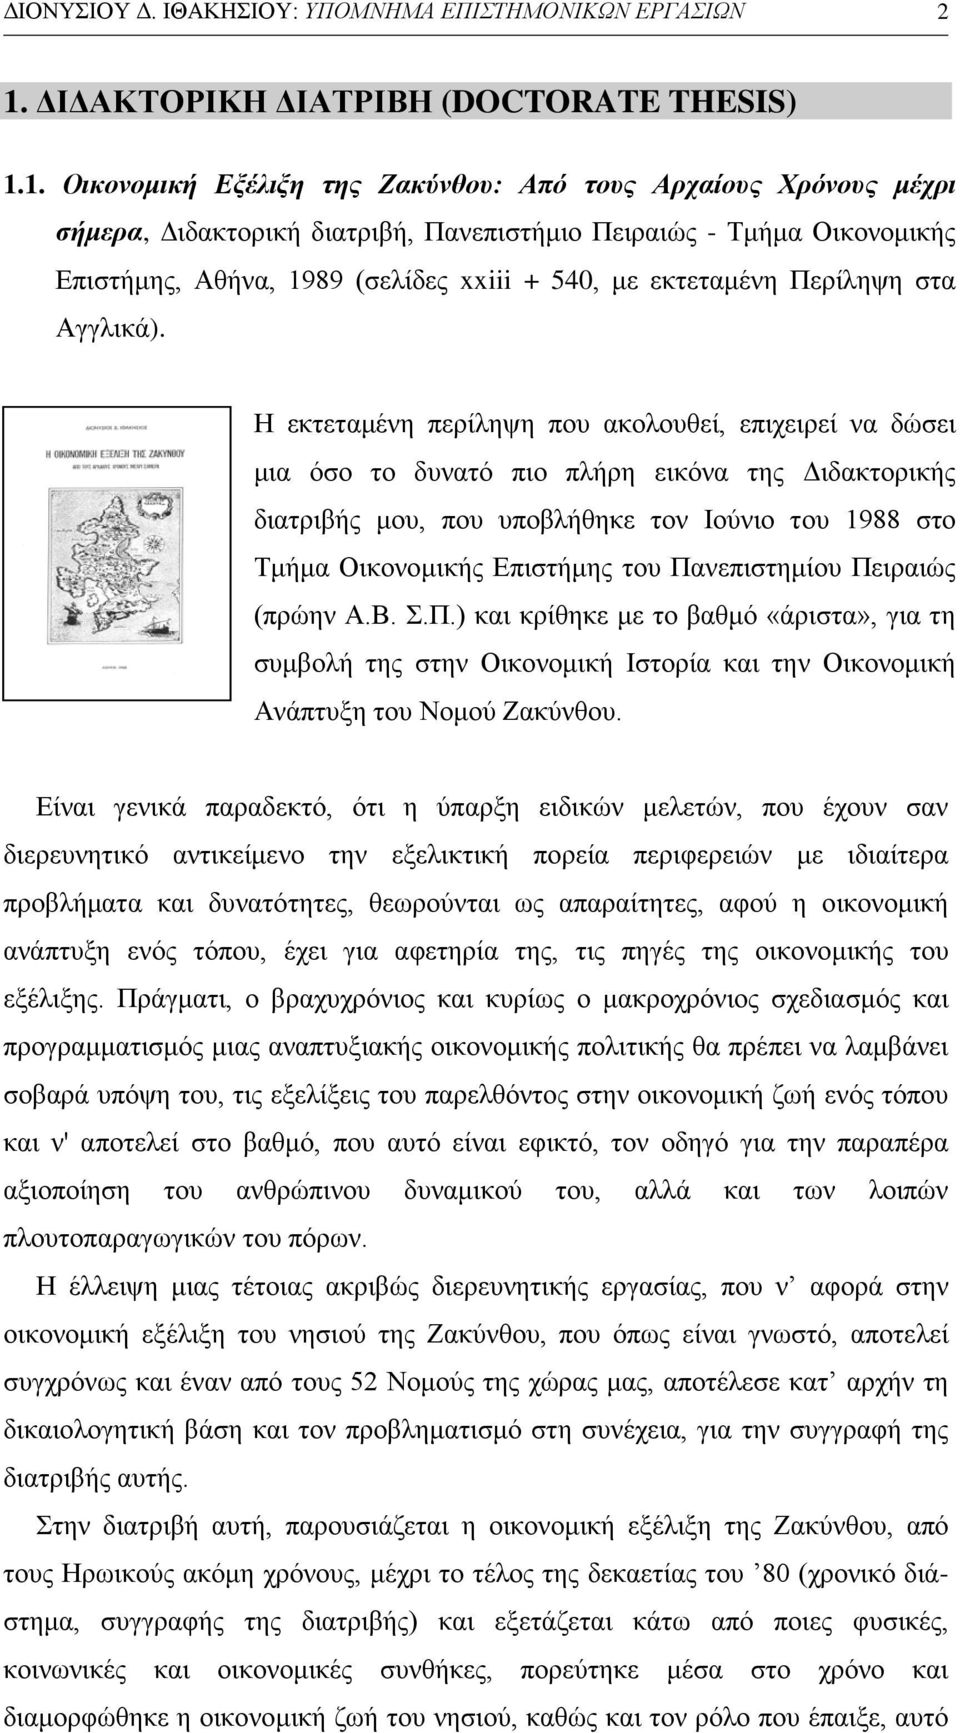 1. Οικονομική Εξέλιξη της Ζακύνθου: Από τους Αρχαίους Χρόνους μέχρι σήμερα, Διδακτορική διατριβή, Πανεπιστήμιο Πειραιώς - Τμήμα Οικονομικής Επιστήμης, Αθήνα, 1989 (σελίδες xxiii + 540, με εκτεταμένη